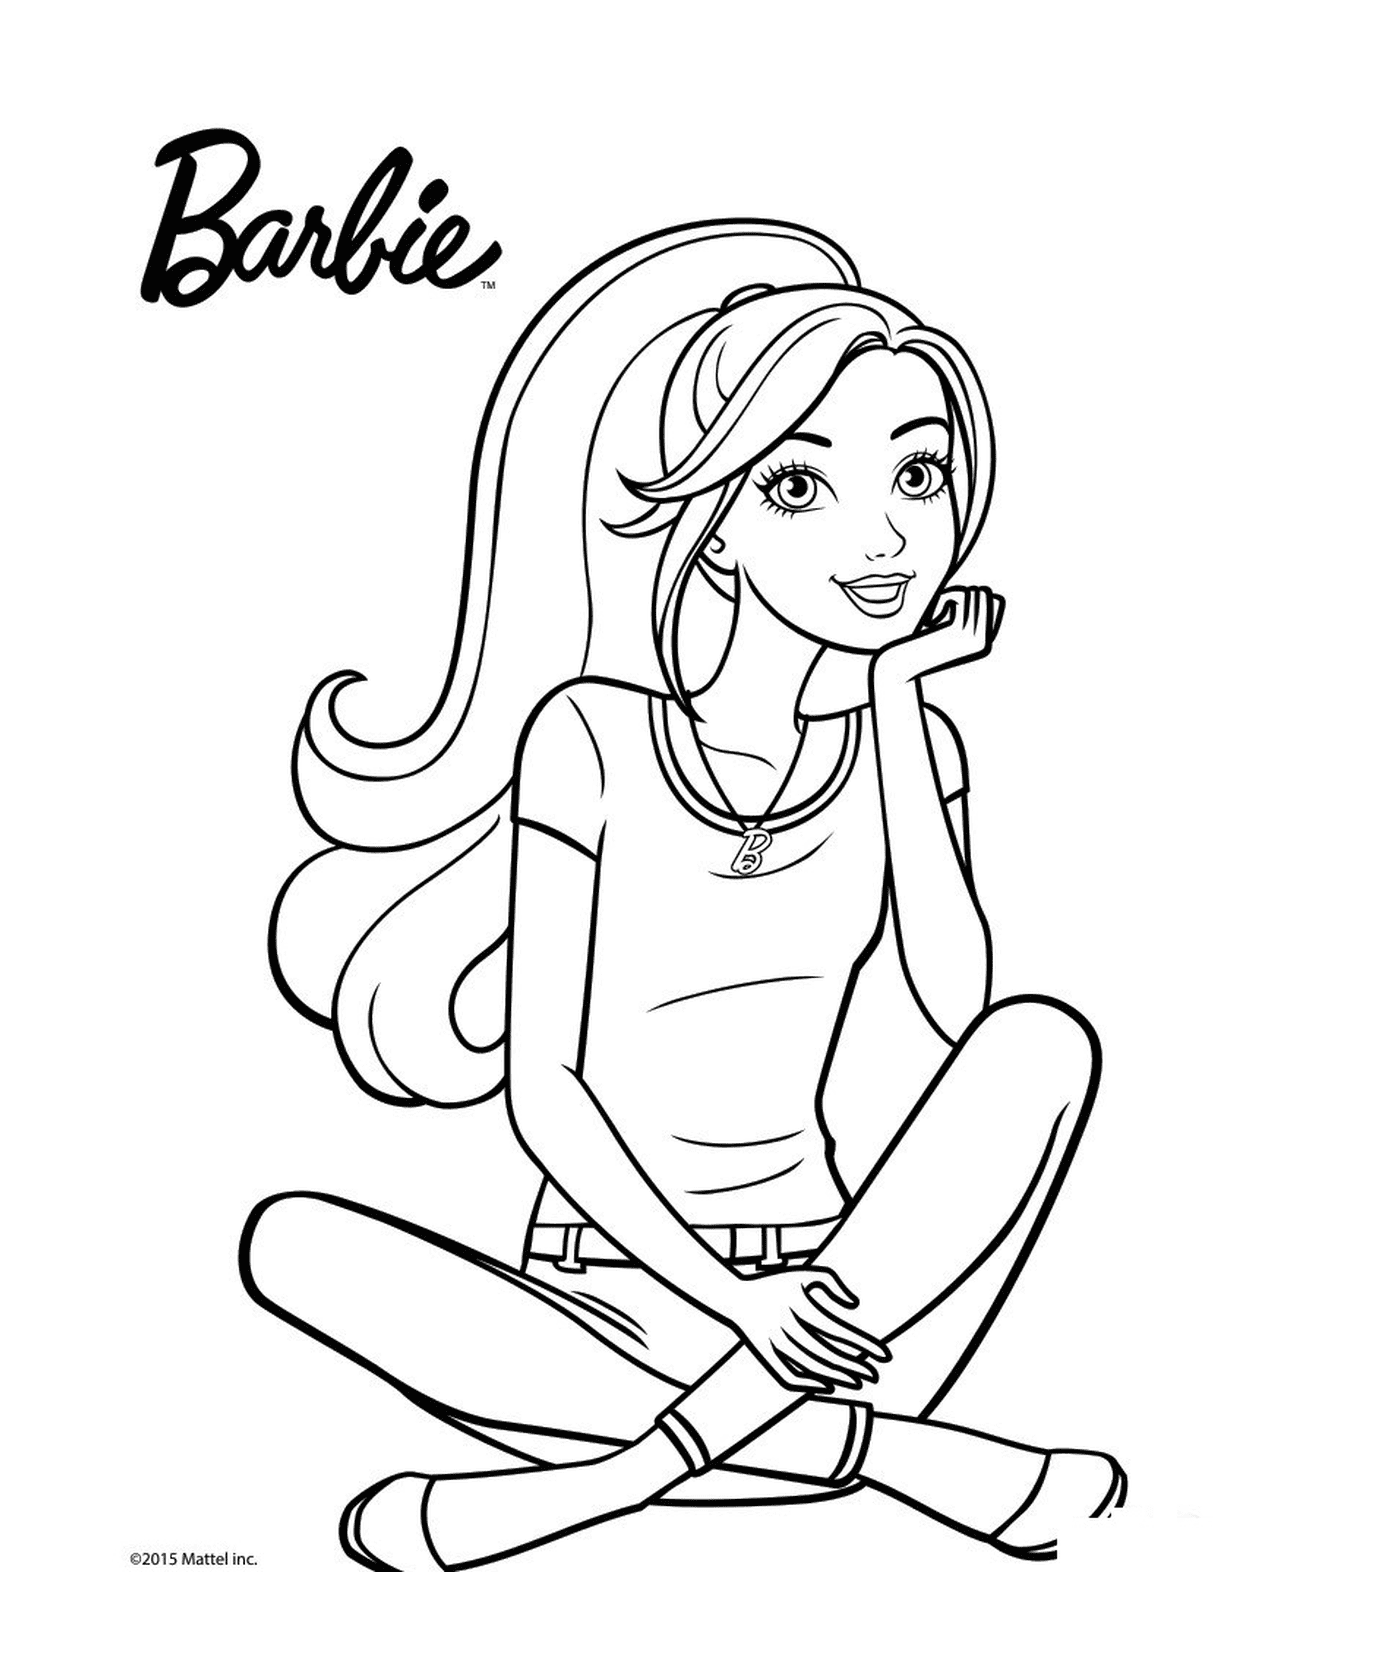  Una muñeca Barbie pensante y feliz 